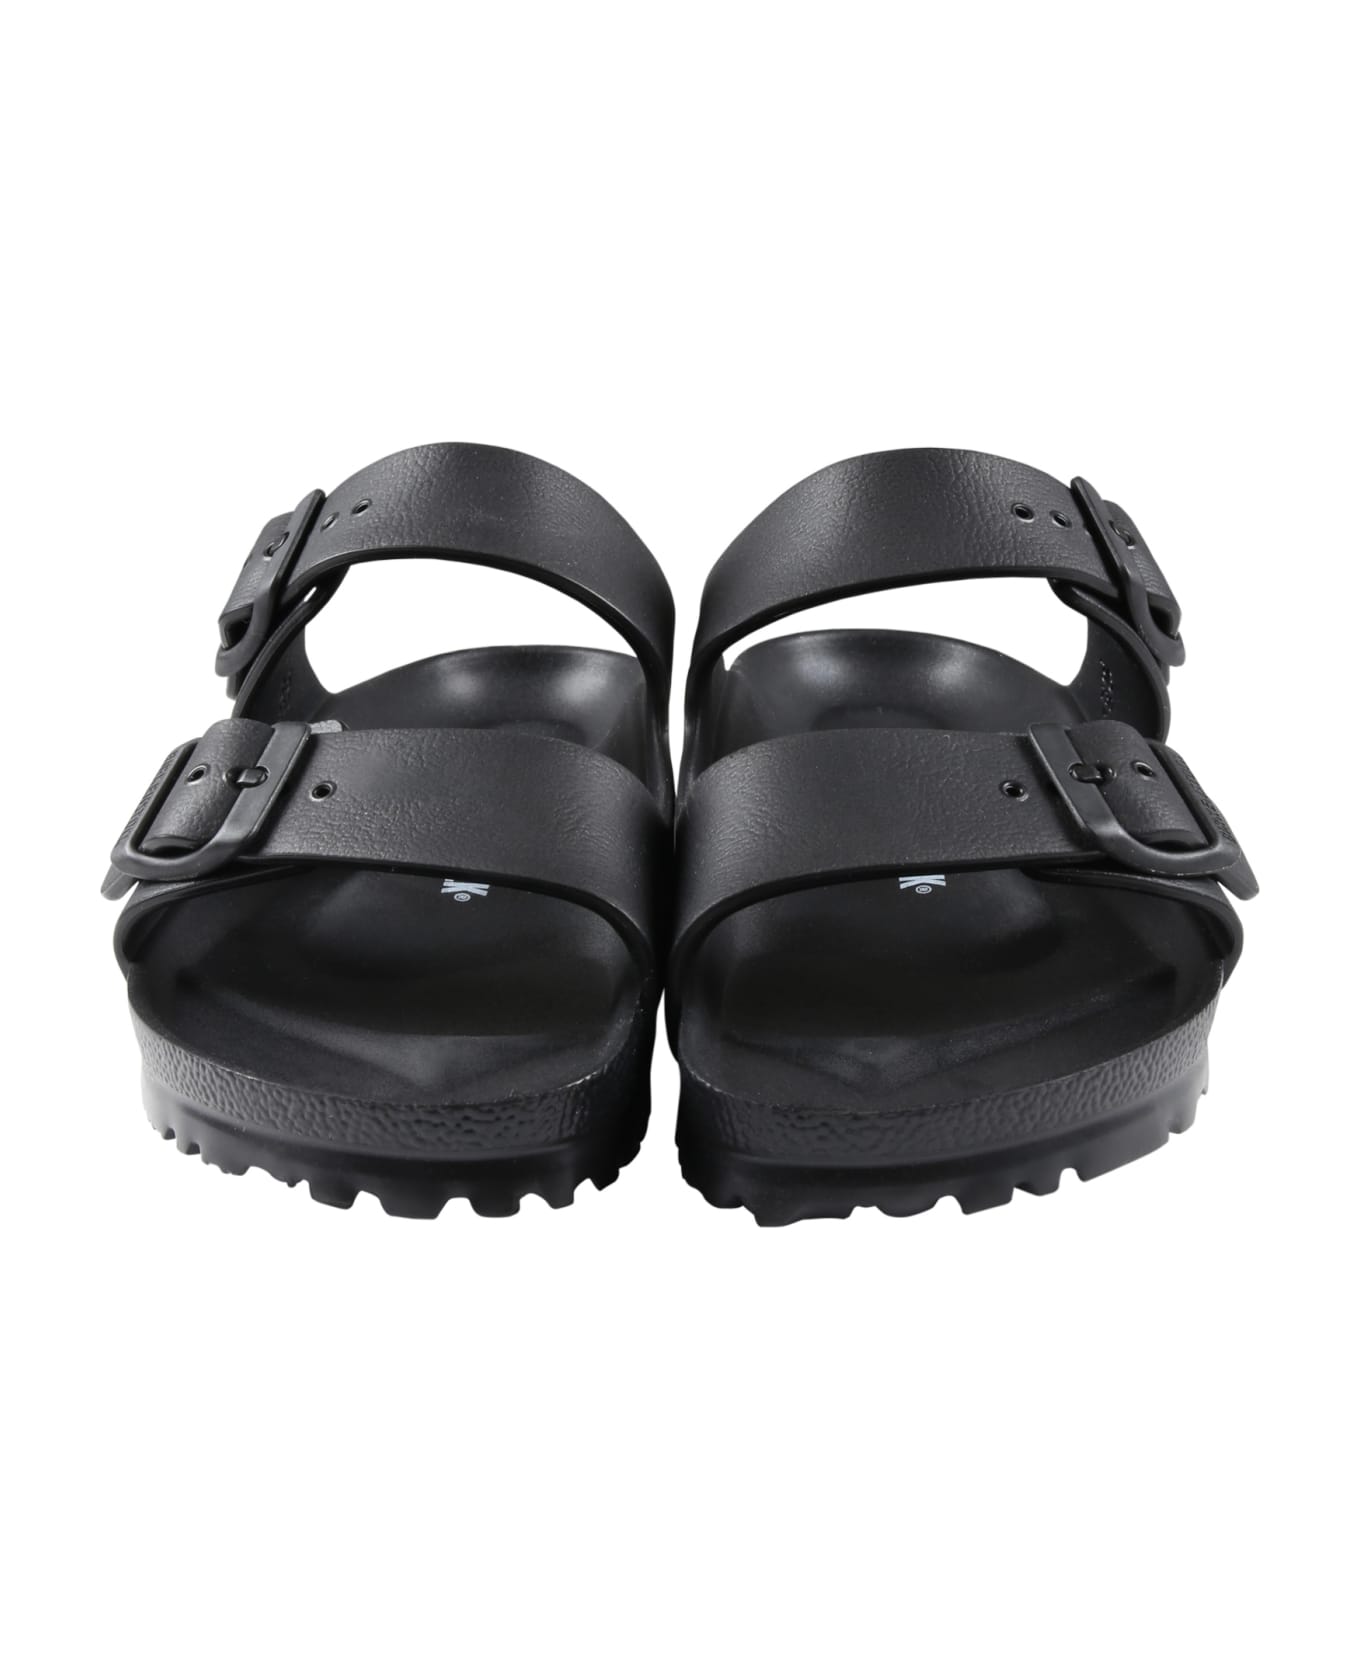 Birkenstock Black Slippers Arizona Eva For Kids With Logo - Black シューズ